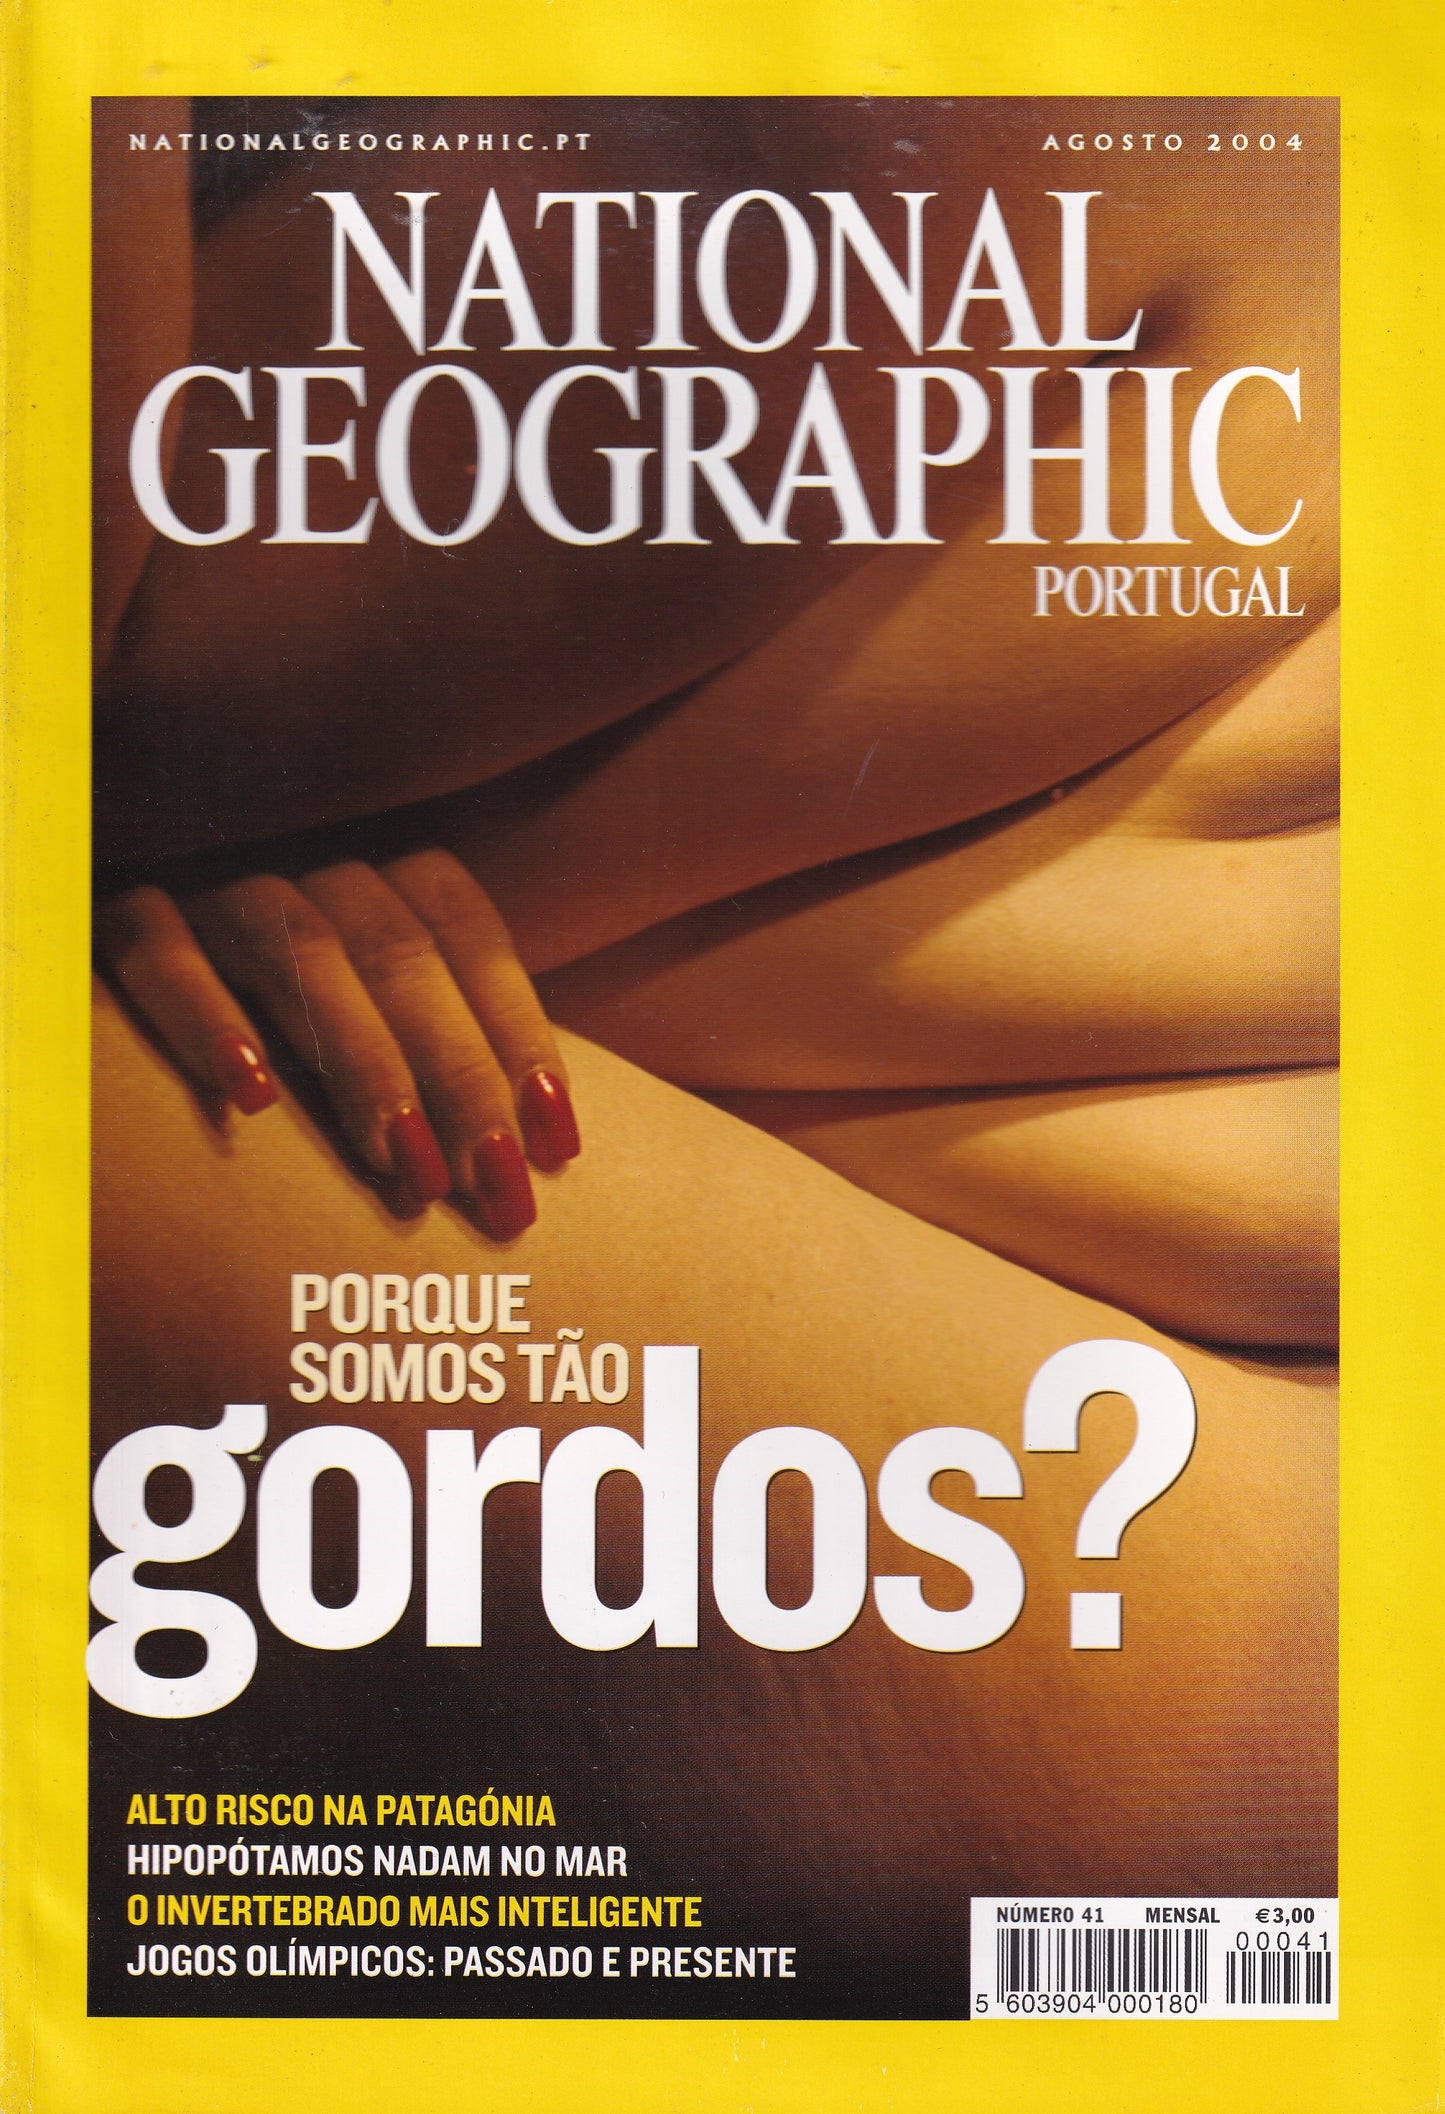 Revista National Geographic Portugal #41 (...Gordos?) Ago.2004 - USADO